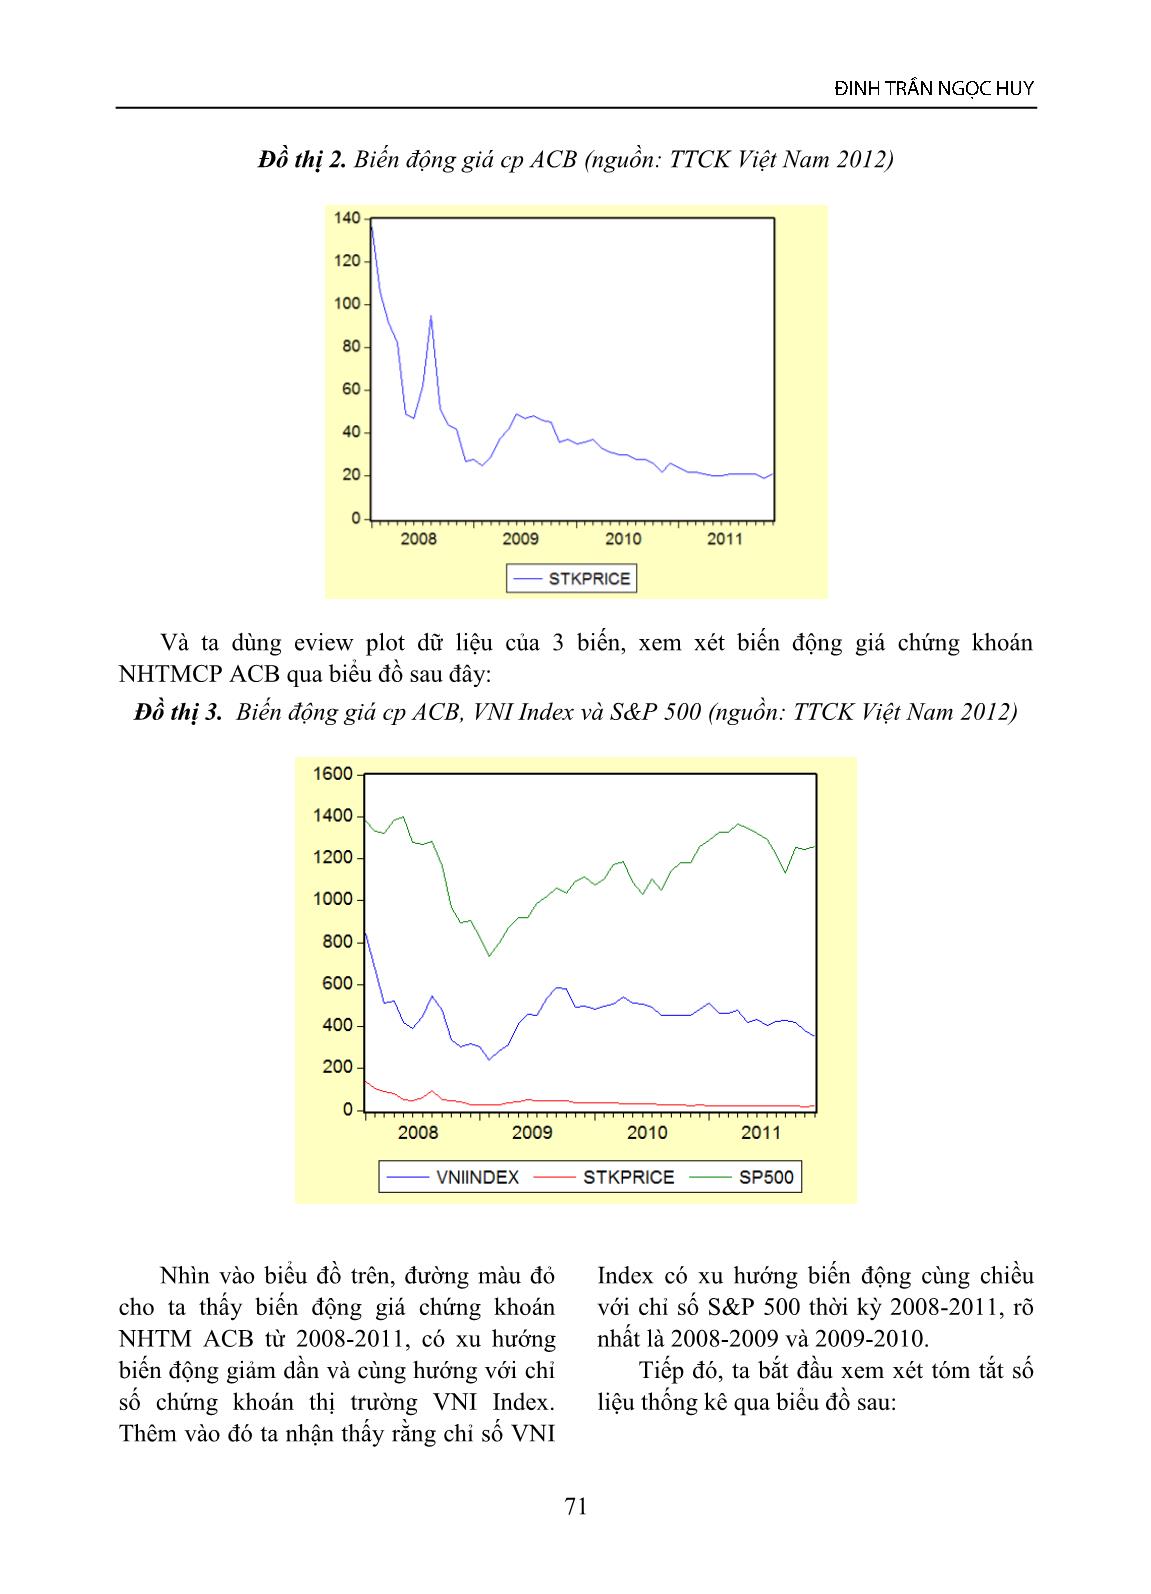 Mô hình kinh tế lượng cho giá chứng khoán thời kỳ 2008-2011 - trường hợp giá cổ phiếu ACB, VNI INDEX, LS phi rủi ro và S&P 500 trang 5